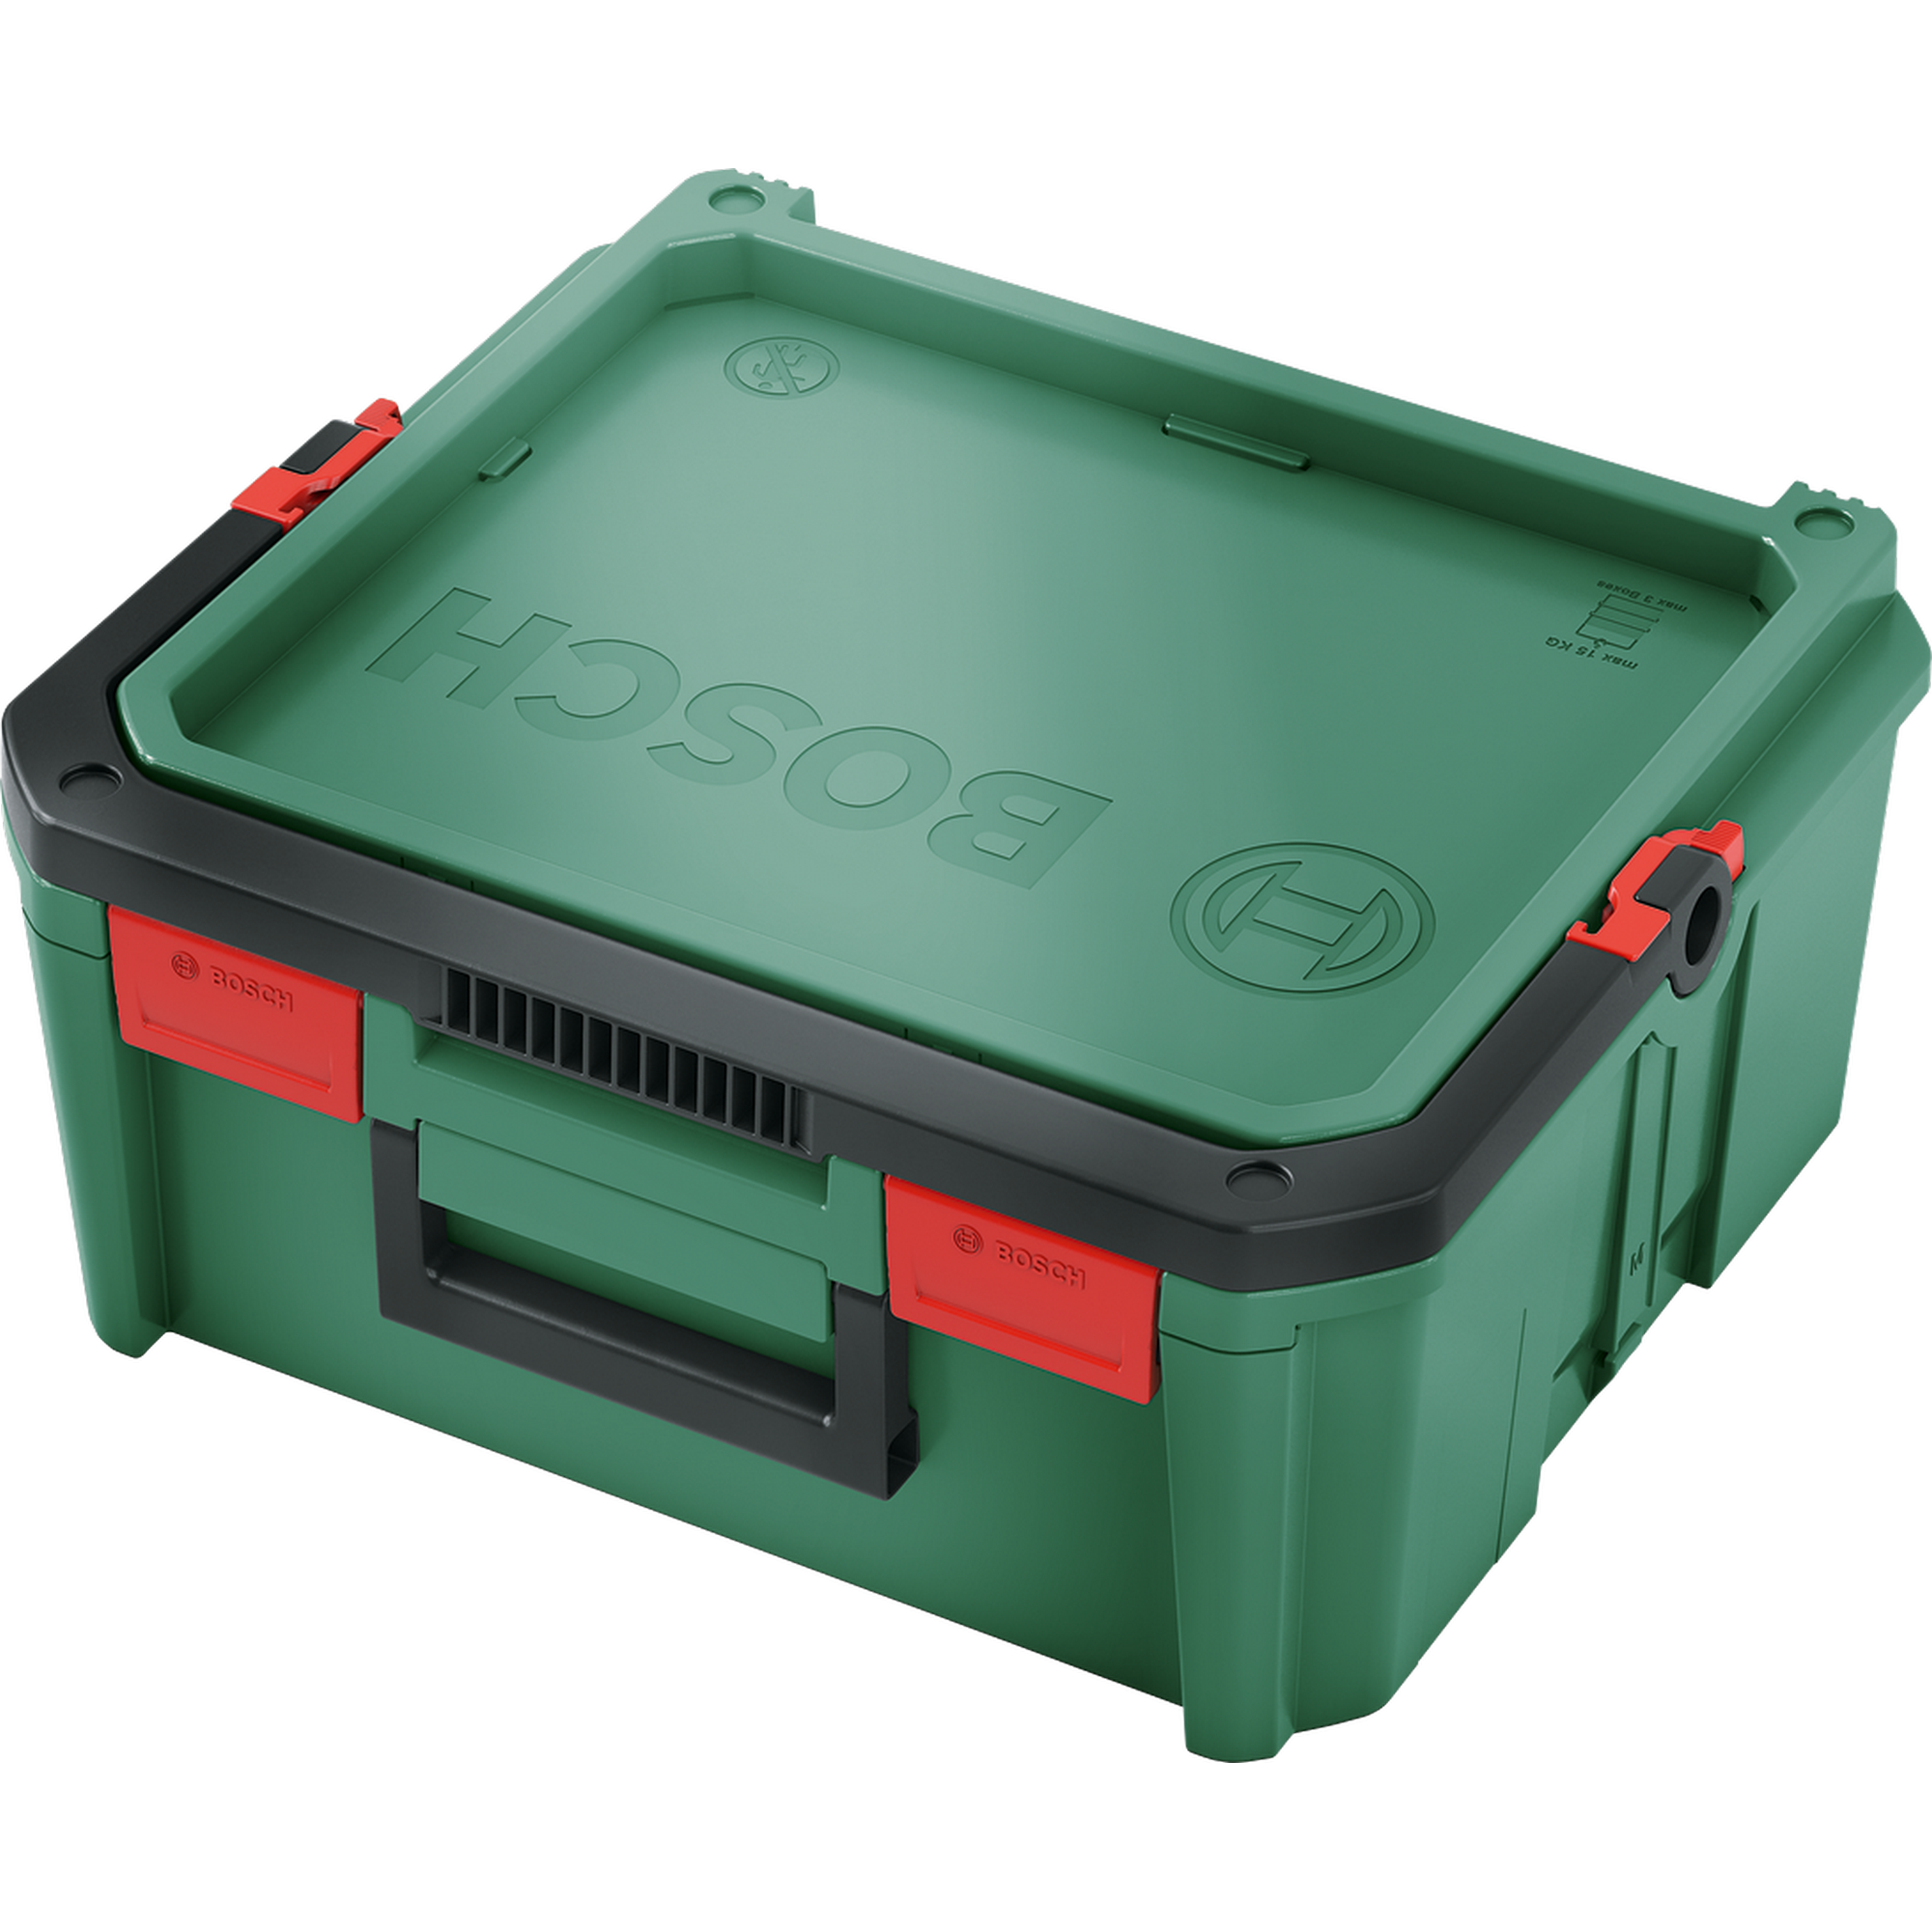 Einzelne SystemBox grün 34,3 x 39,1 x 17,1 cm + product picture